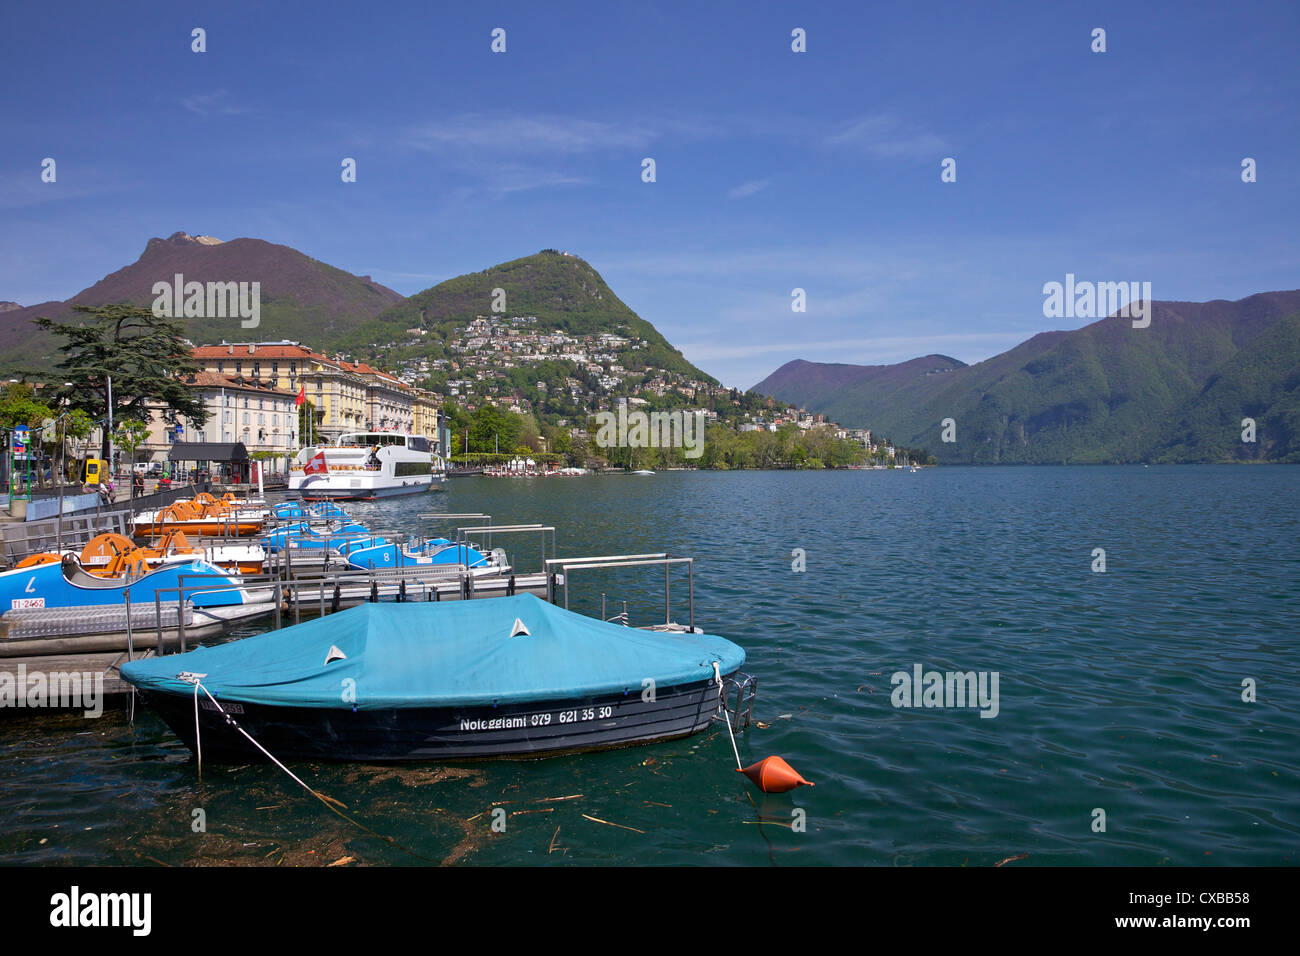 Lakeside à Sunshine, ville de Lugano, le lac de Lugano, Tessin, Suisse, Europe Banque D'Images